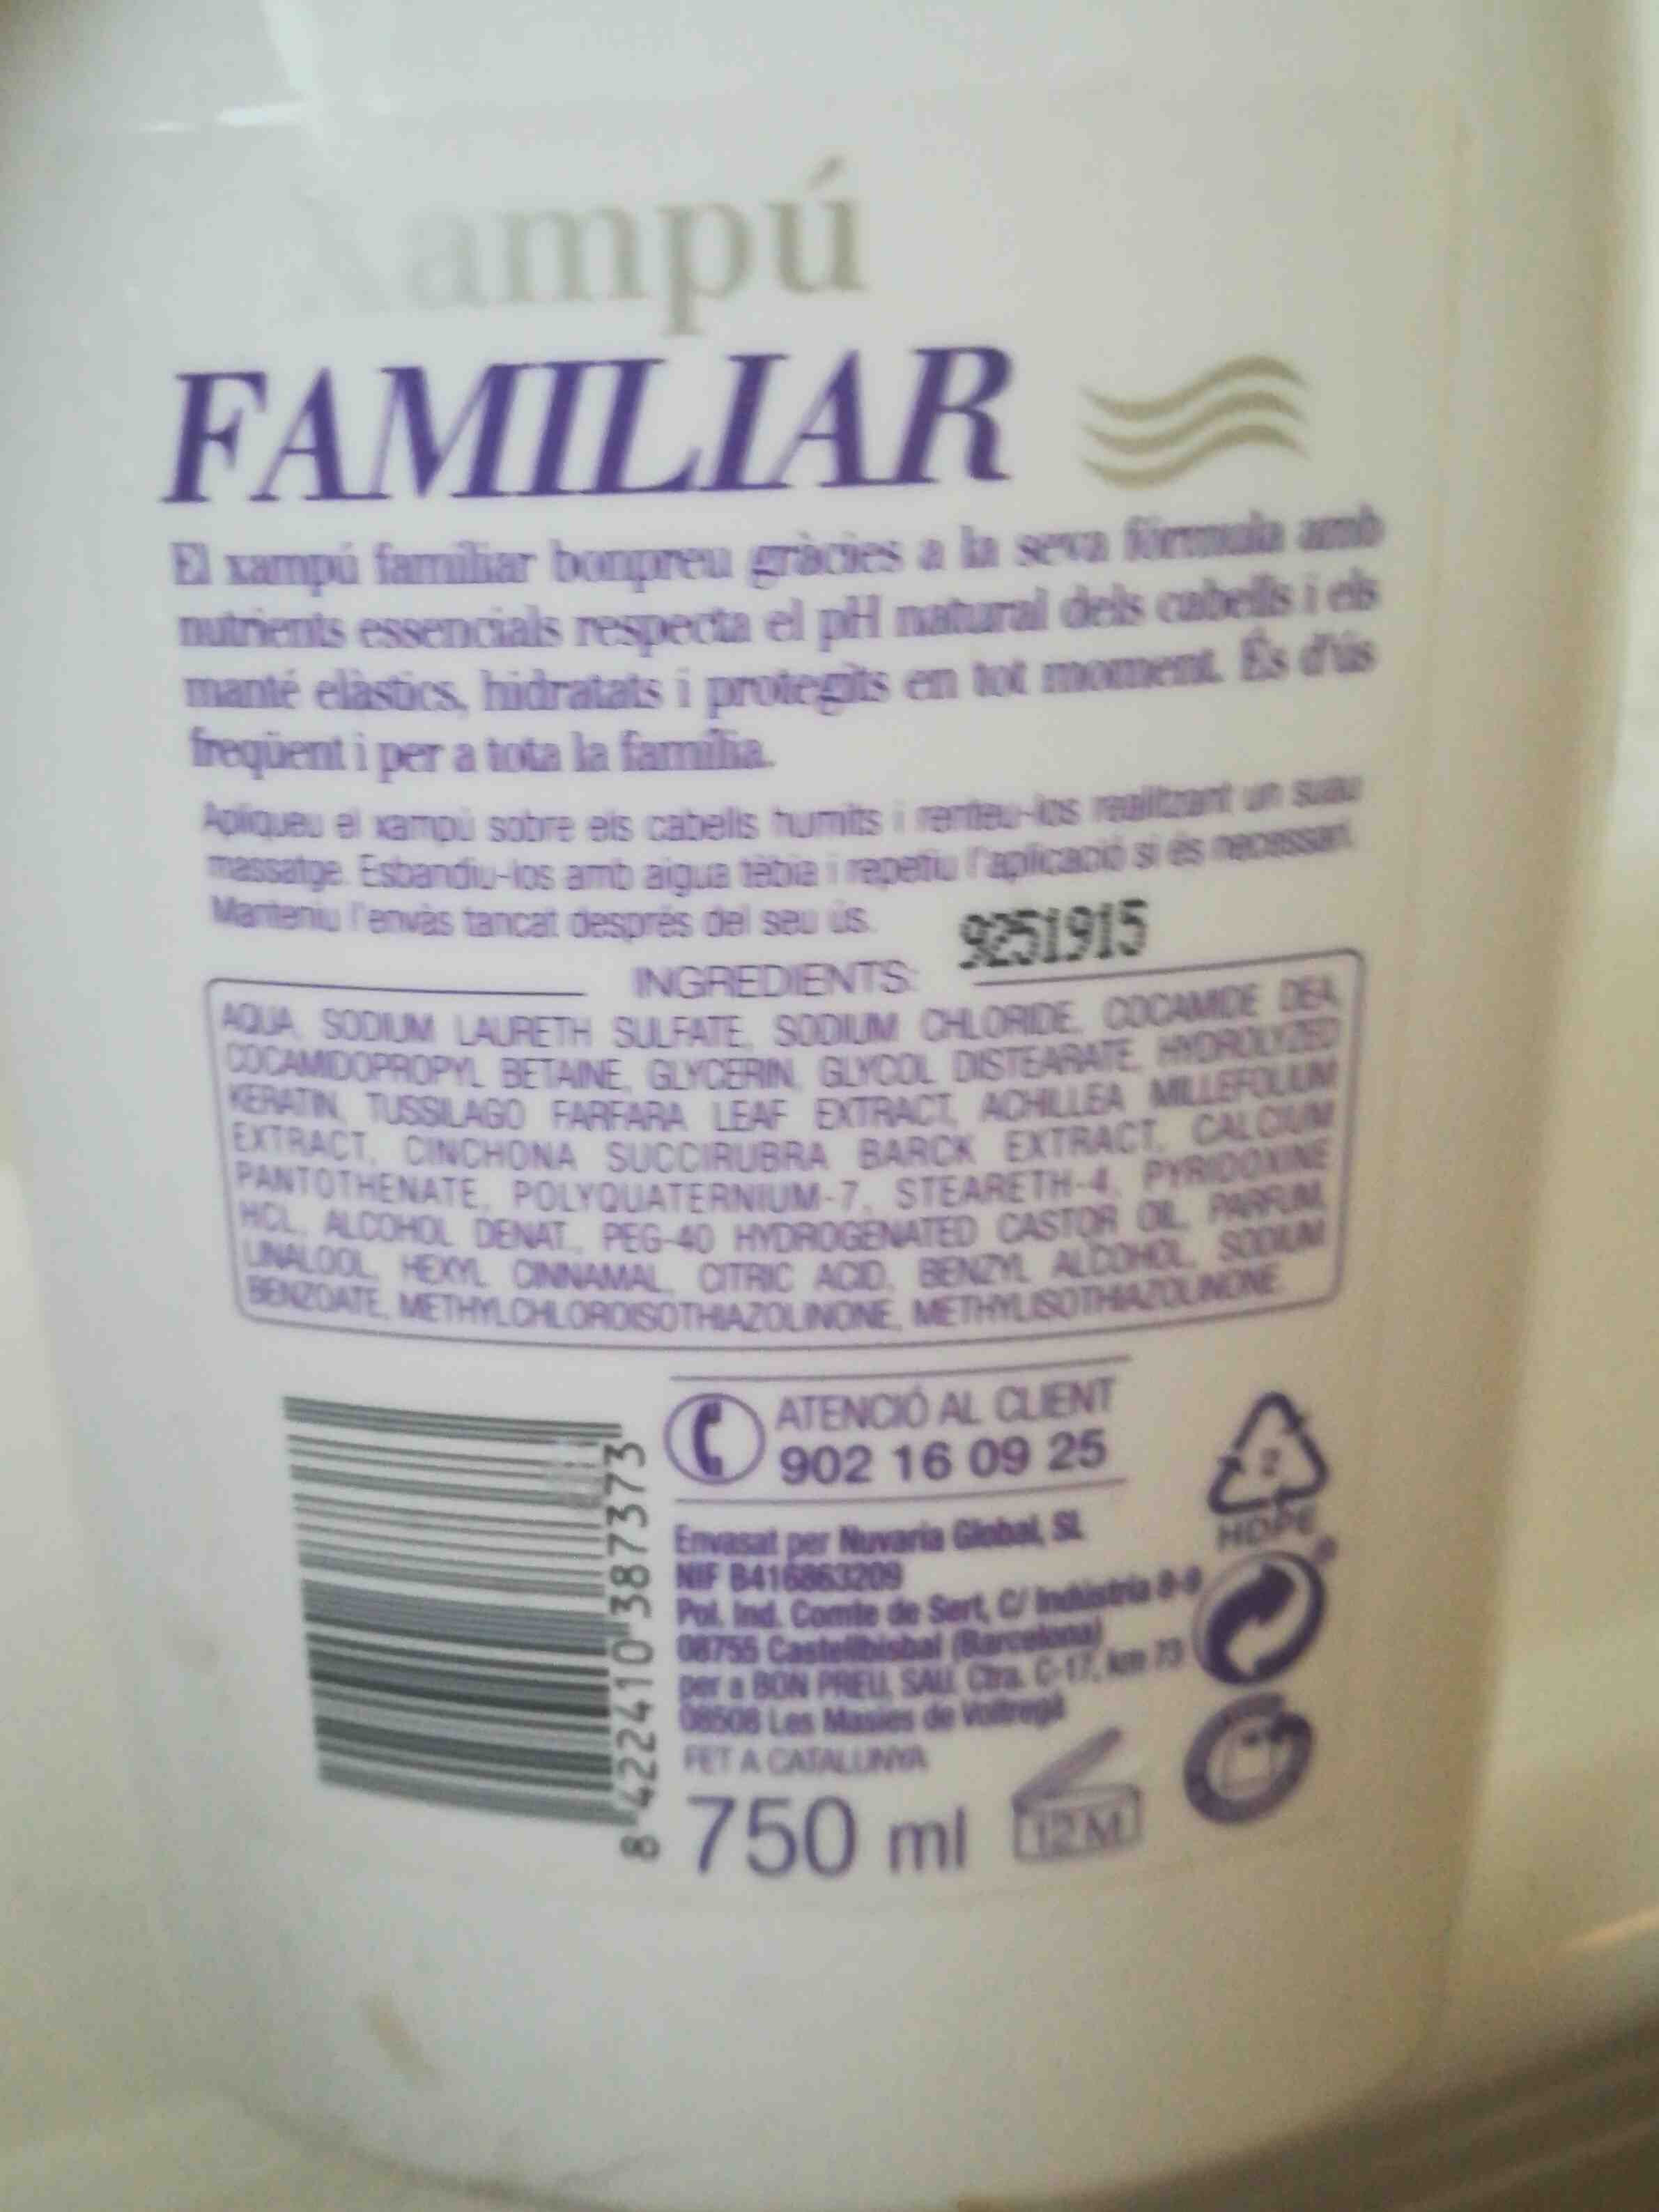 Xampu familiar bon preu - רכיבים - en